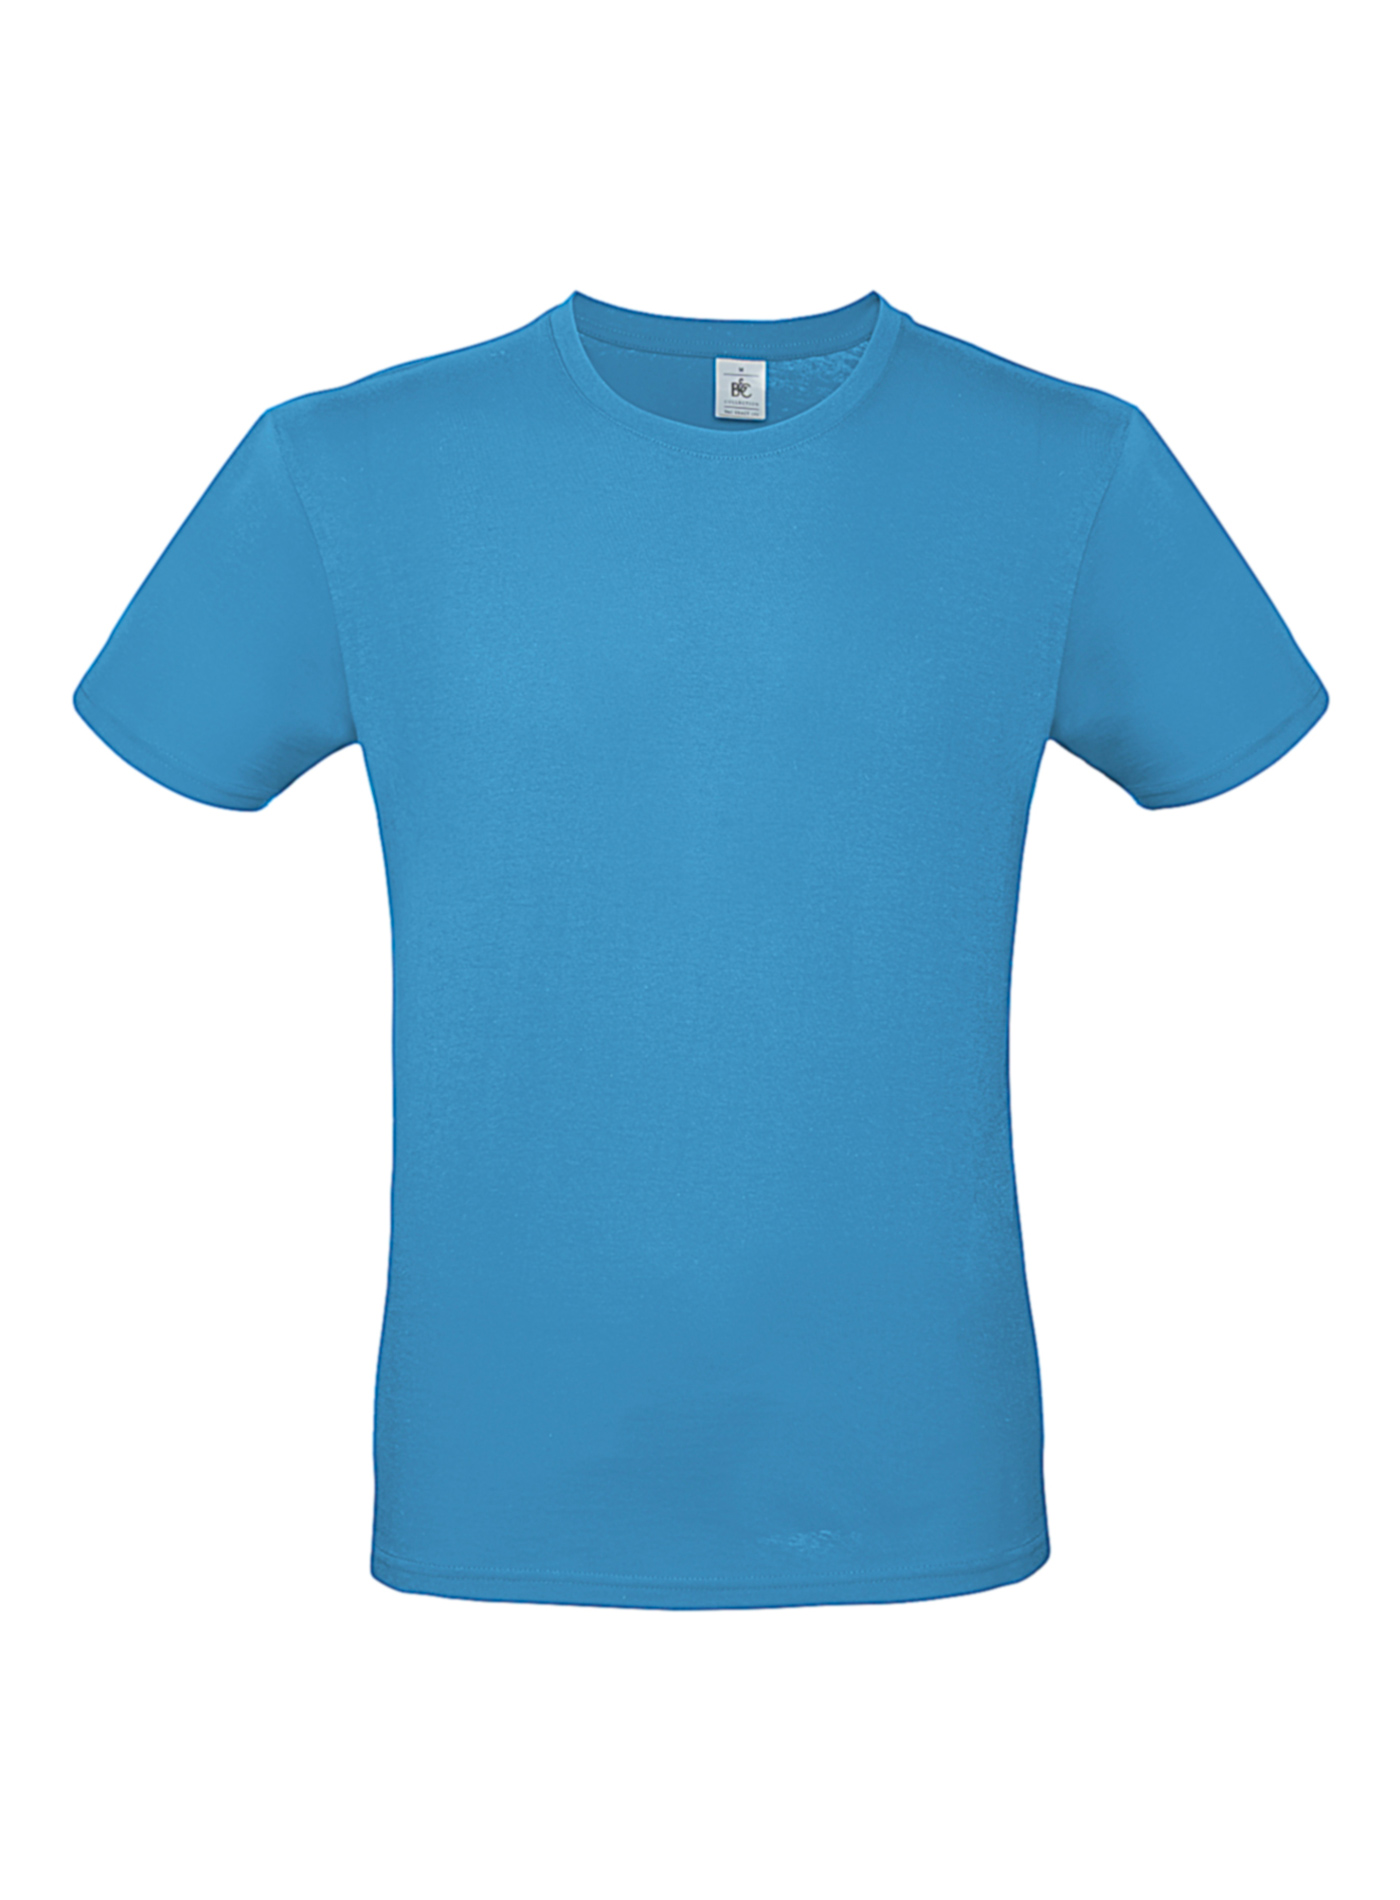 Pánské tričko B&C - Blankytně modrá L